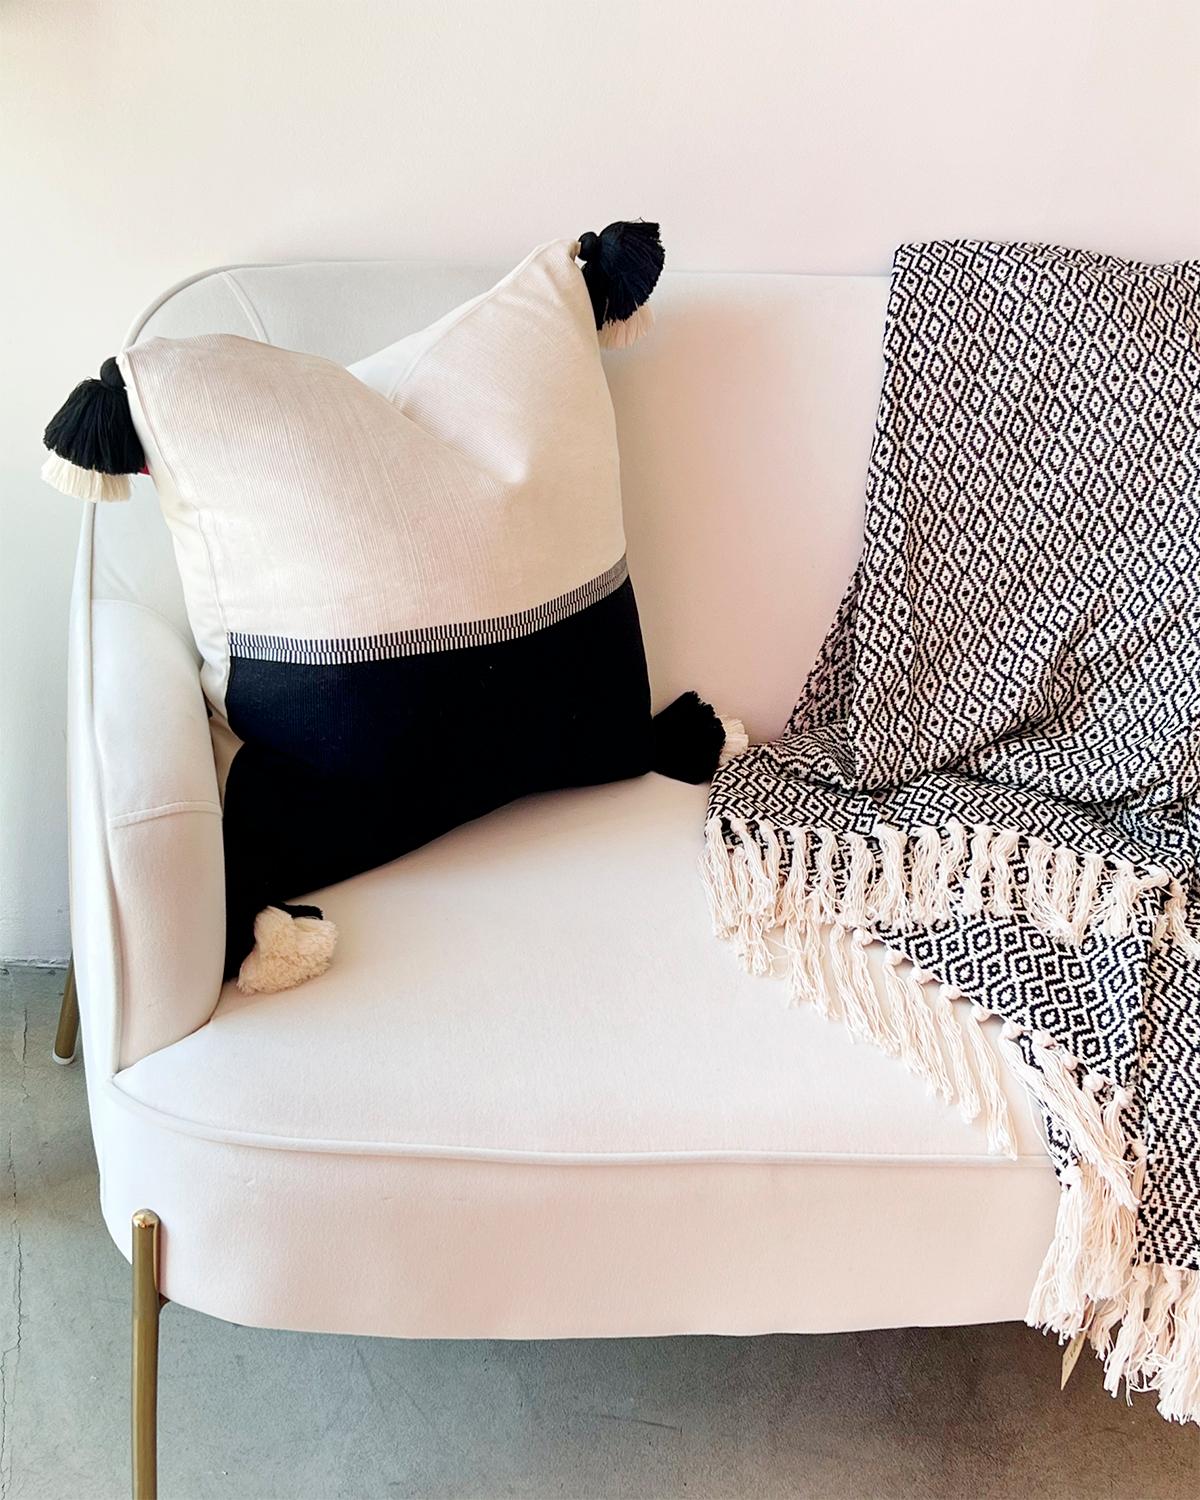 Dieses schwarz-weiße Lendenschurzkissen wurde in Peru aus 100% Pima-Baumwolle handgewebt. Das richtige Kissen für die Couch in Ihrem Wohnzimmer oder das Bett in Ihrem Schlafzimmer zu finden, kann schwierig sein, aber wir haben eine skurrile Lösung